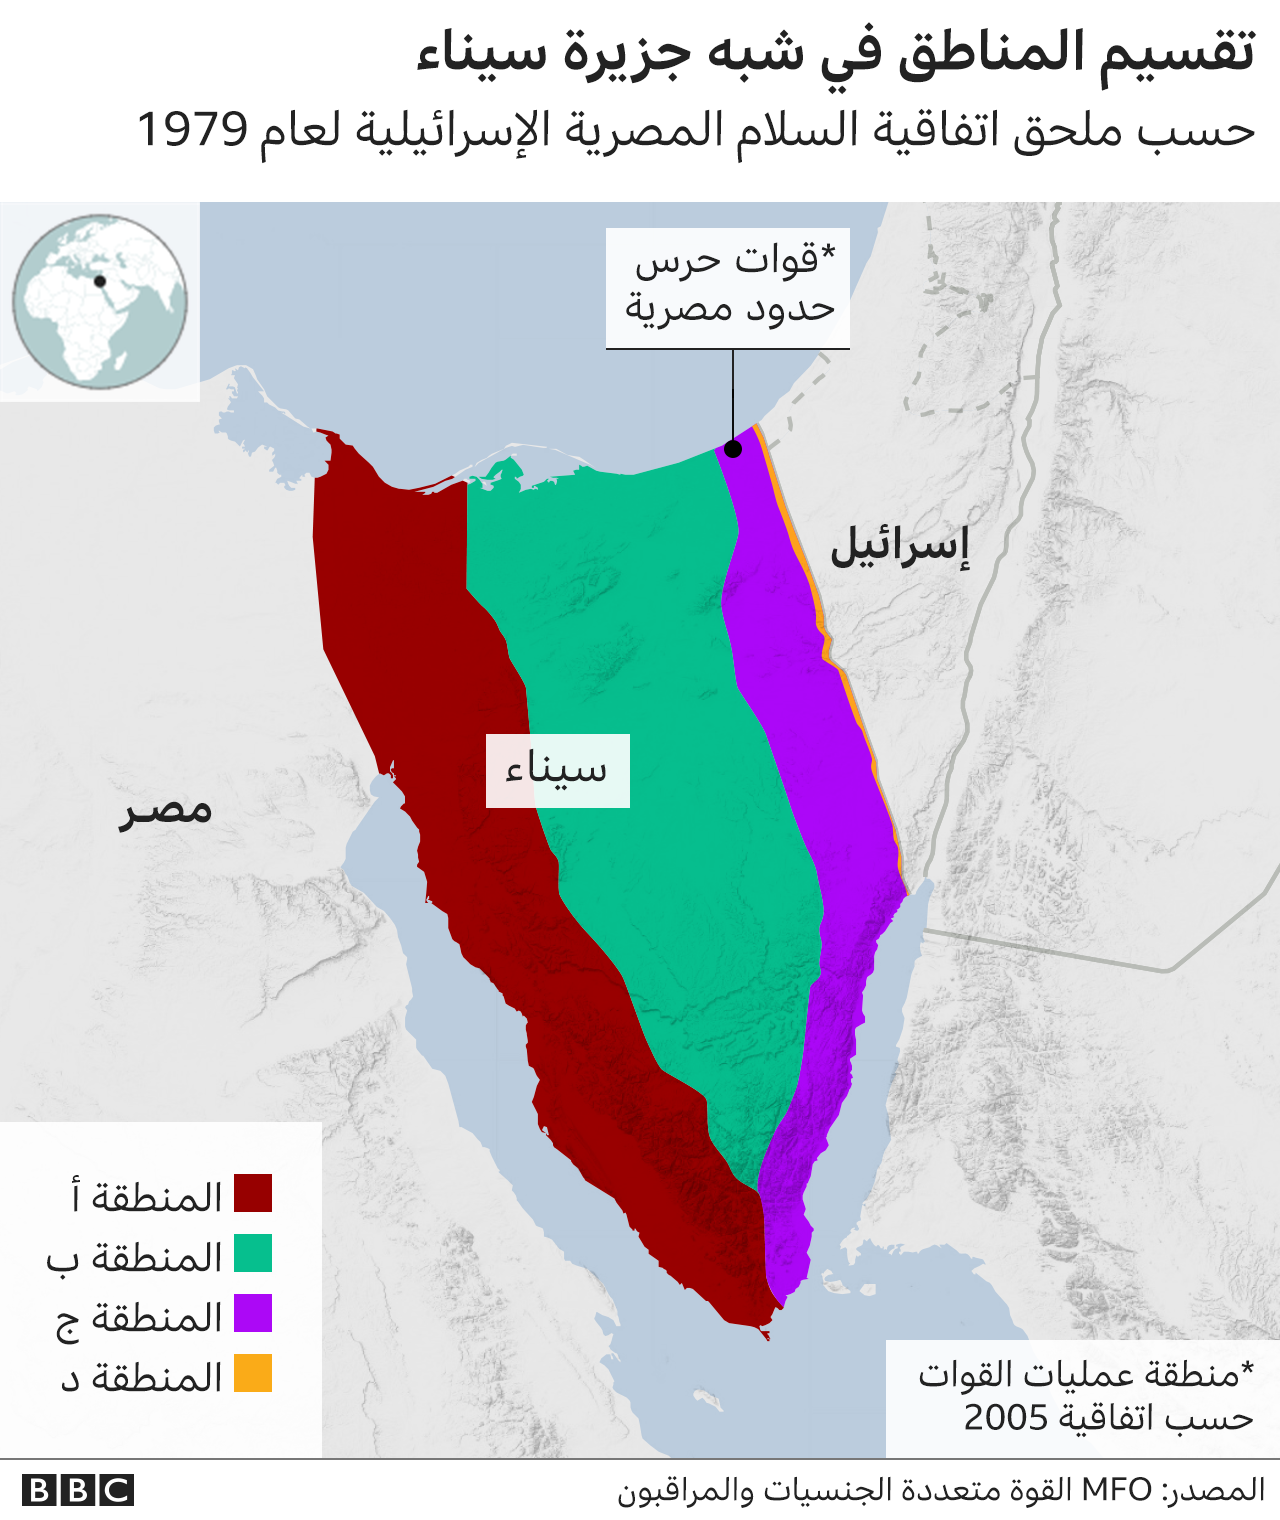 خارطة تظهر تقسيم المناطق في شبه جزيرة سيناء بحسب اتفاقية السلام عام 1979